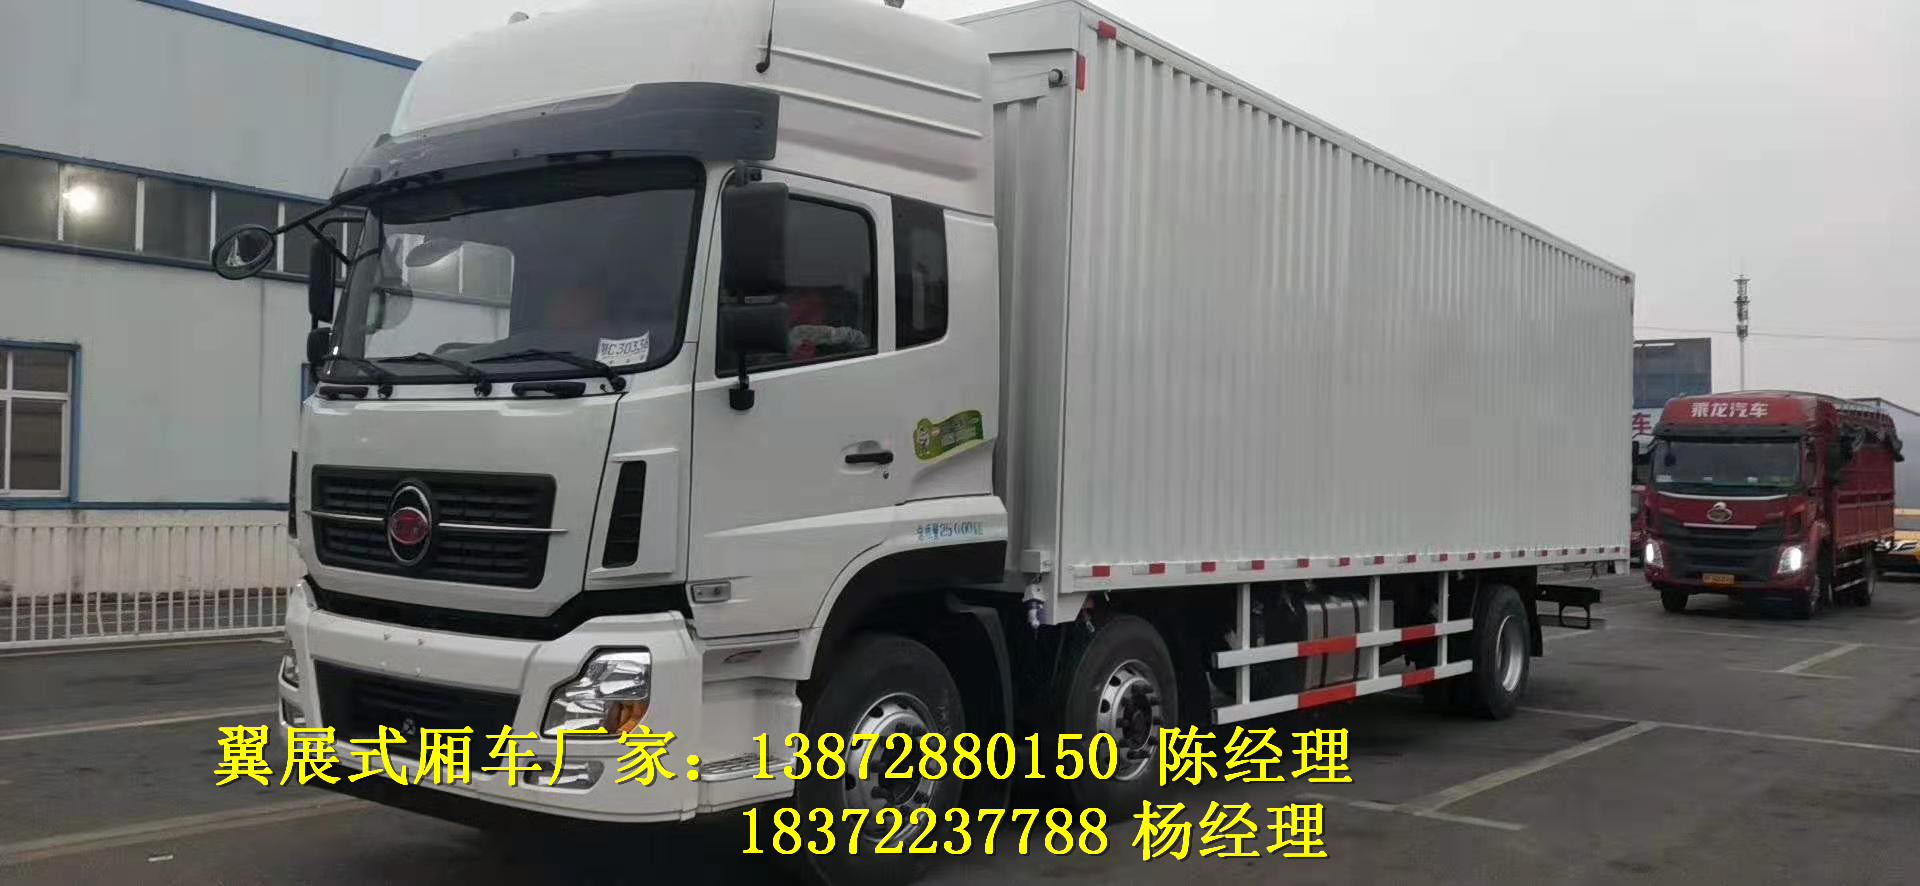 武清国六新规9.6米危废运输车经销点 危险品车厂家